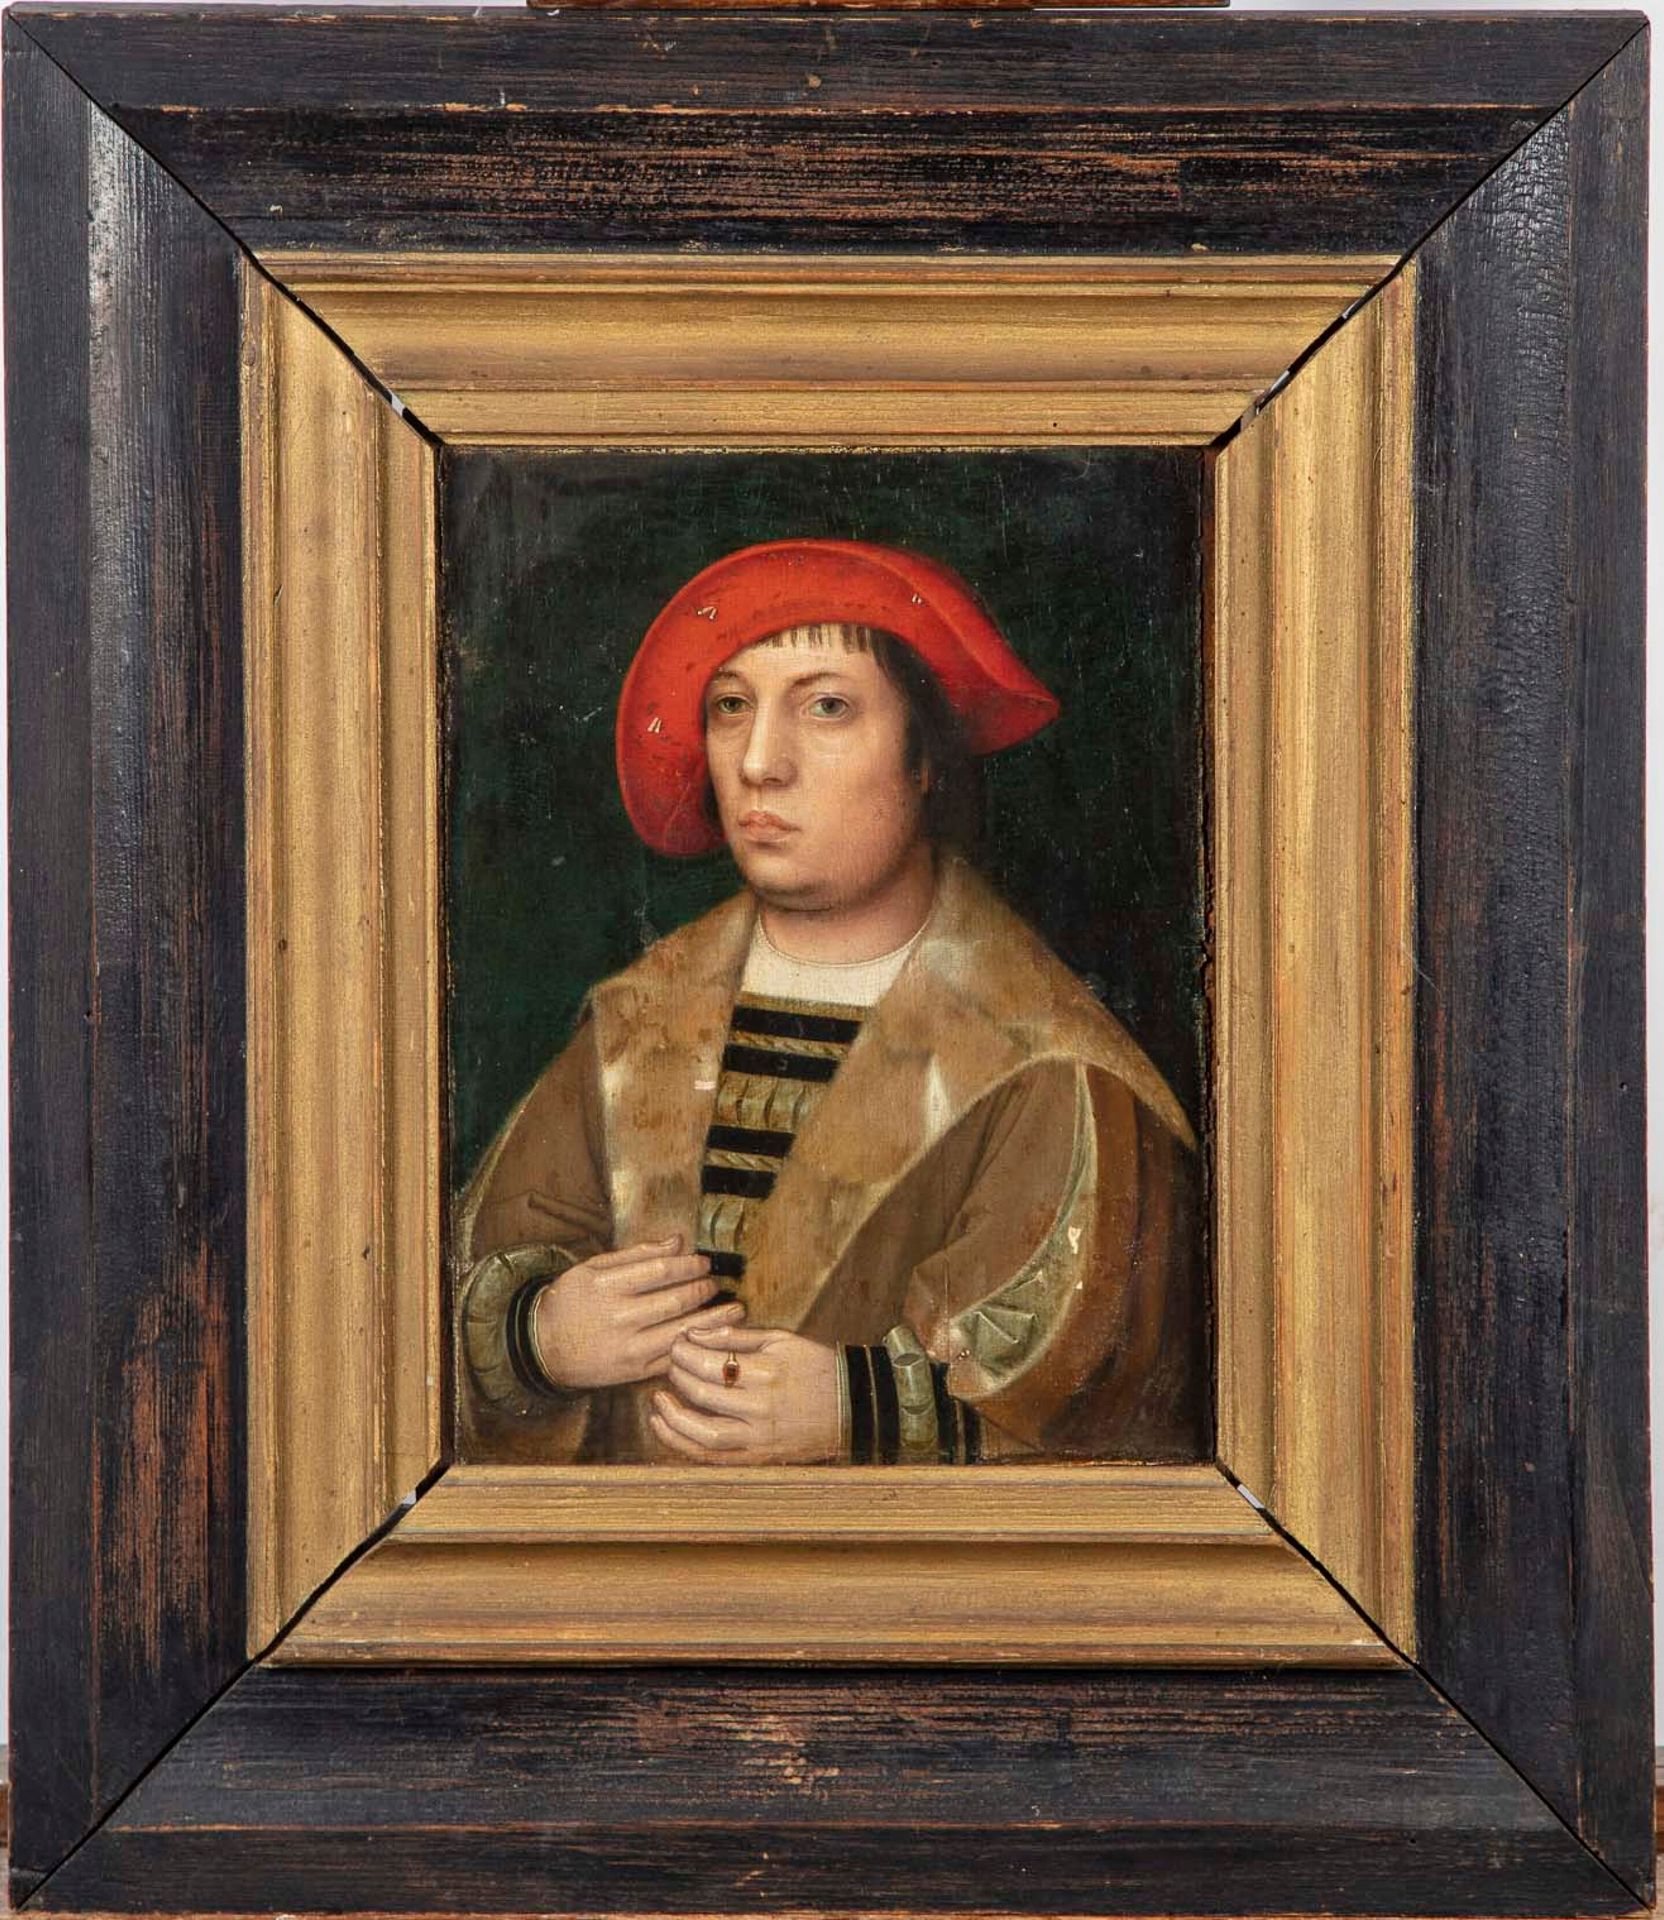 ECOLE DU NORD ESCUELA DEL NORTE de finales del siglo XVI

Retrato de un hombre

&hellip;